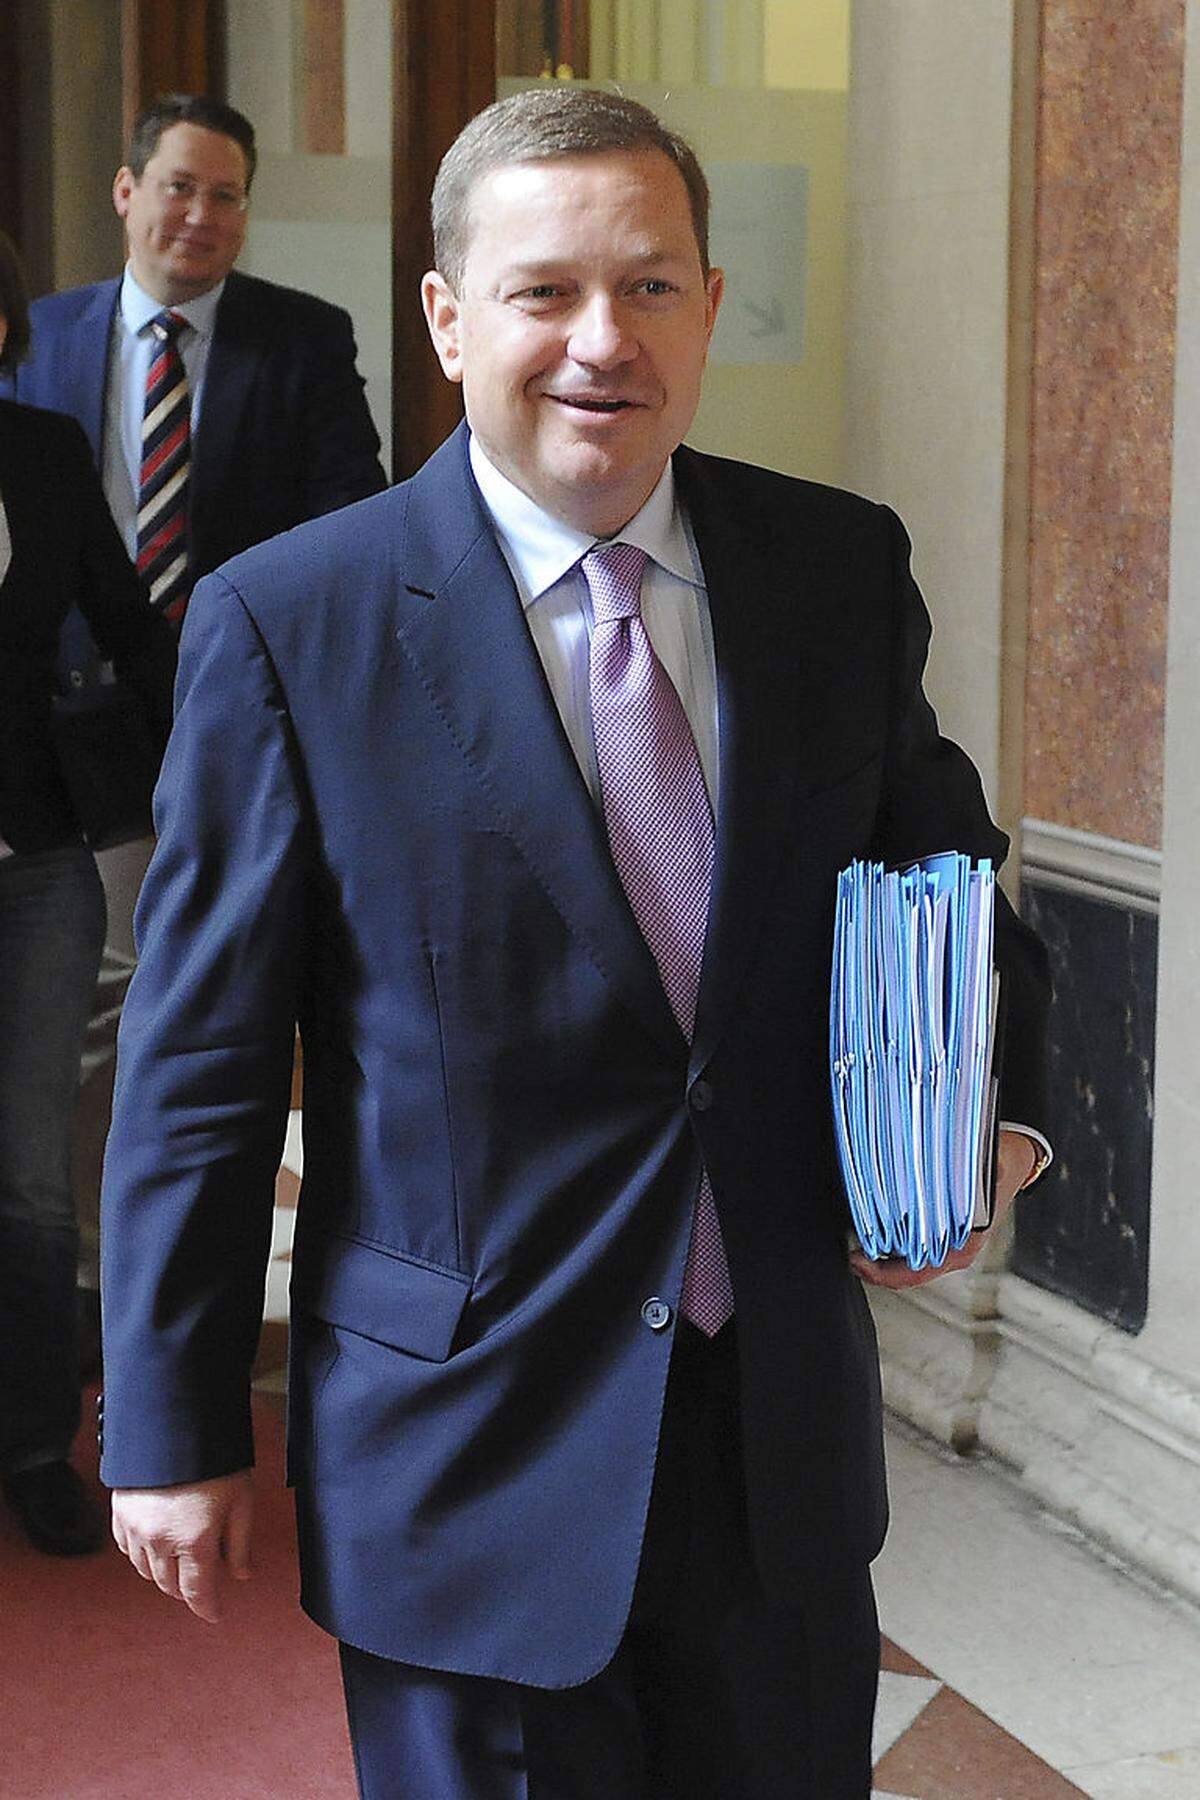 Der gebürtige Grazer Amon gilt als einer der Paradesteirer in der ÖVP. Er ist Obmann der steirischen Mandatare in Wien - diese Funktion als "Steirerklubobmann" wird auch in seinem offiziellen Lebenslauf auf der Parlamentshomepage ausdrücklich angeführt.